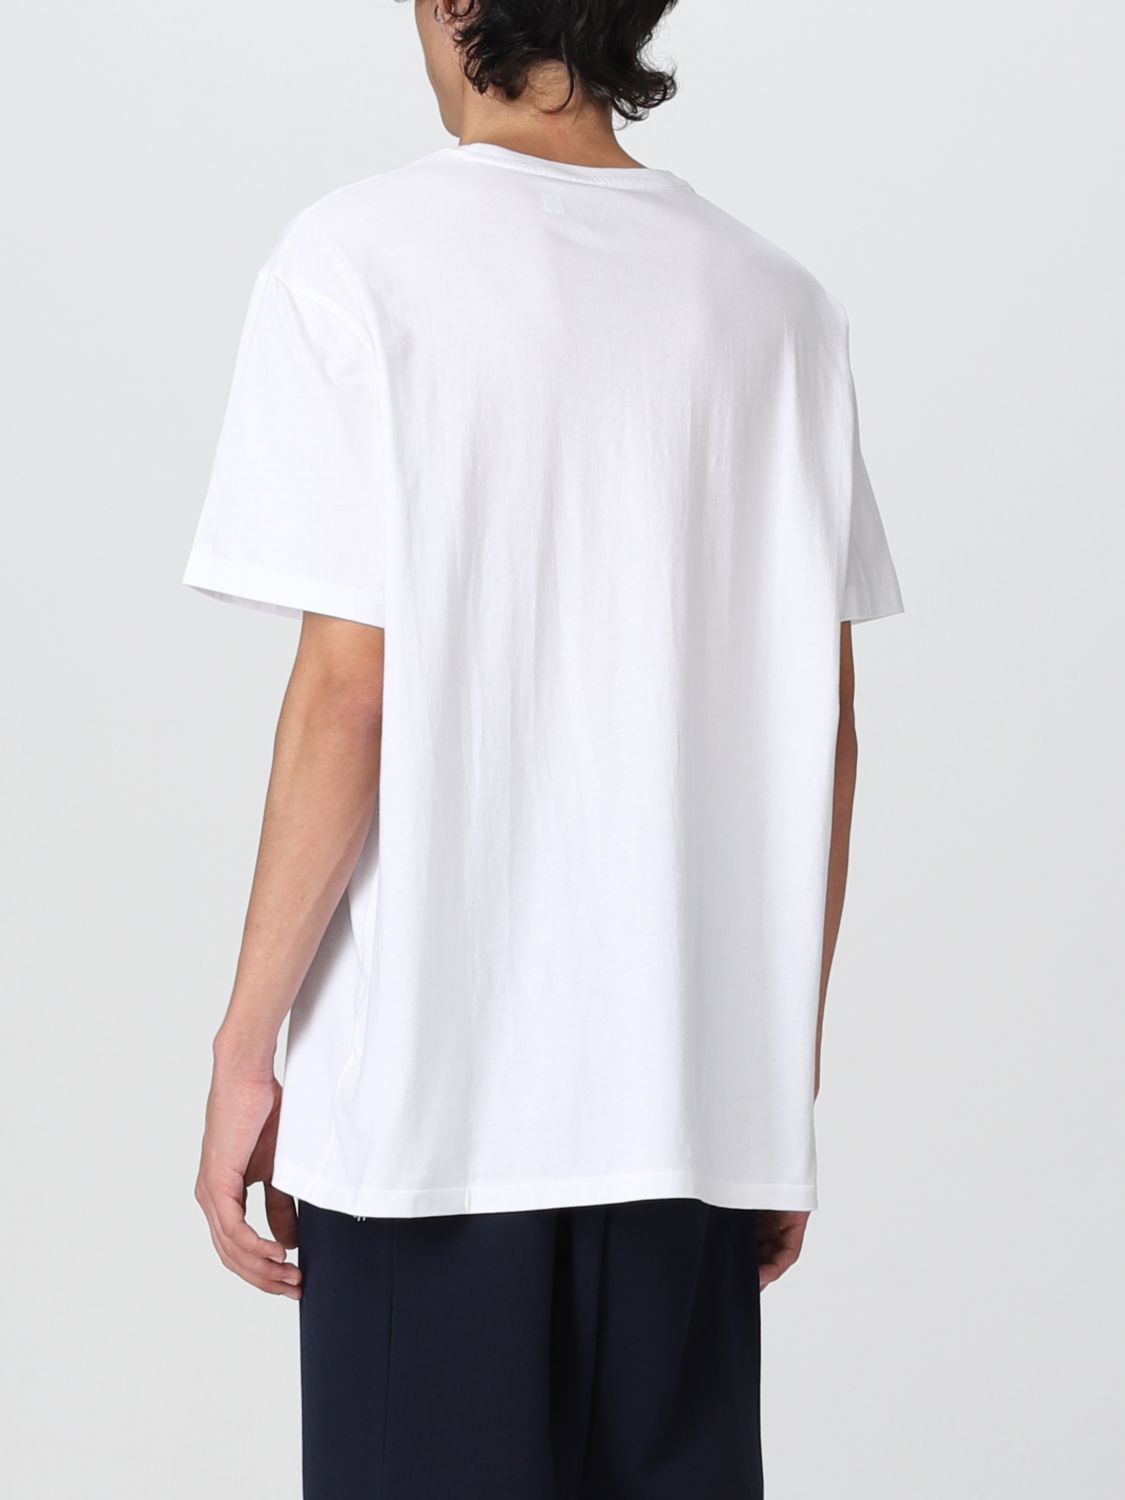 POLO RALPH LAUREN: T-shirt men - White | T-Shirt Polo Ralph Lauren ...